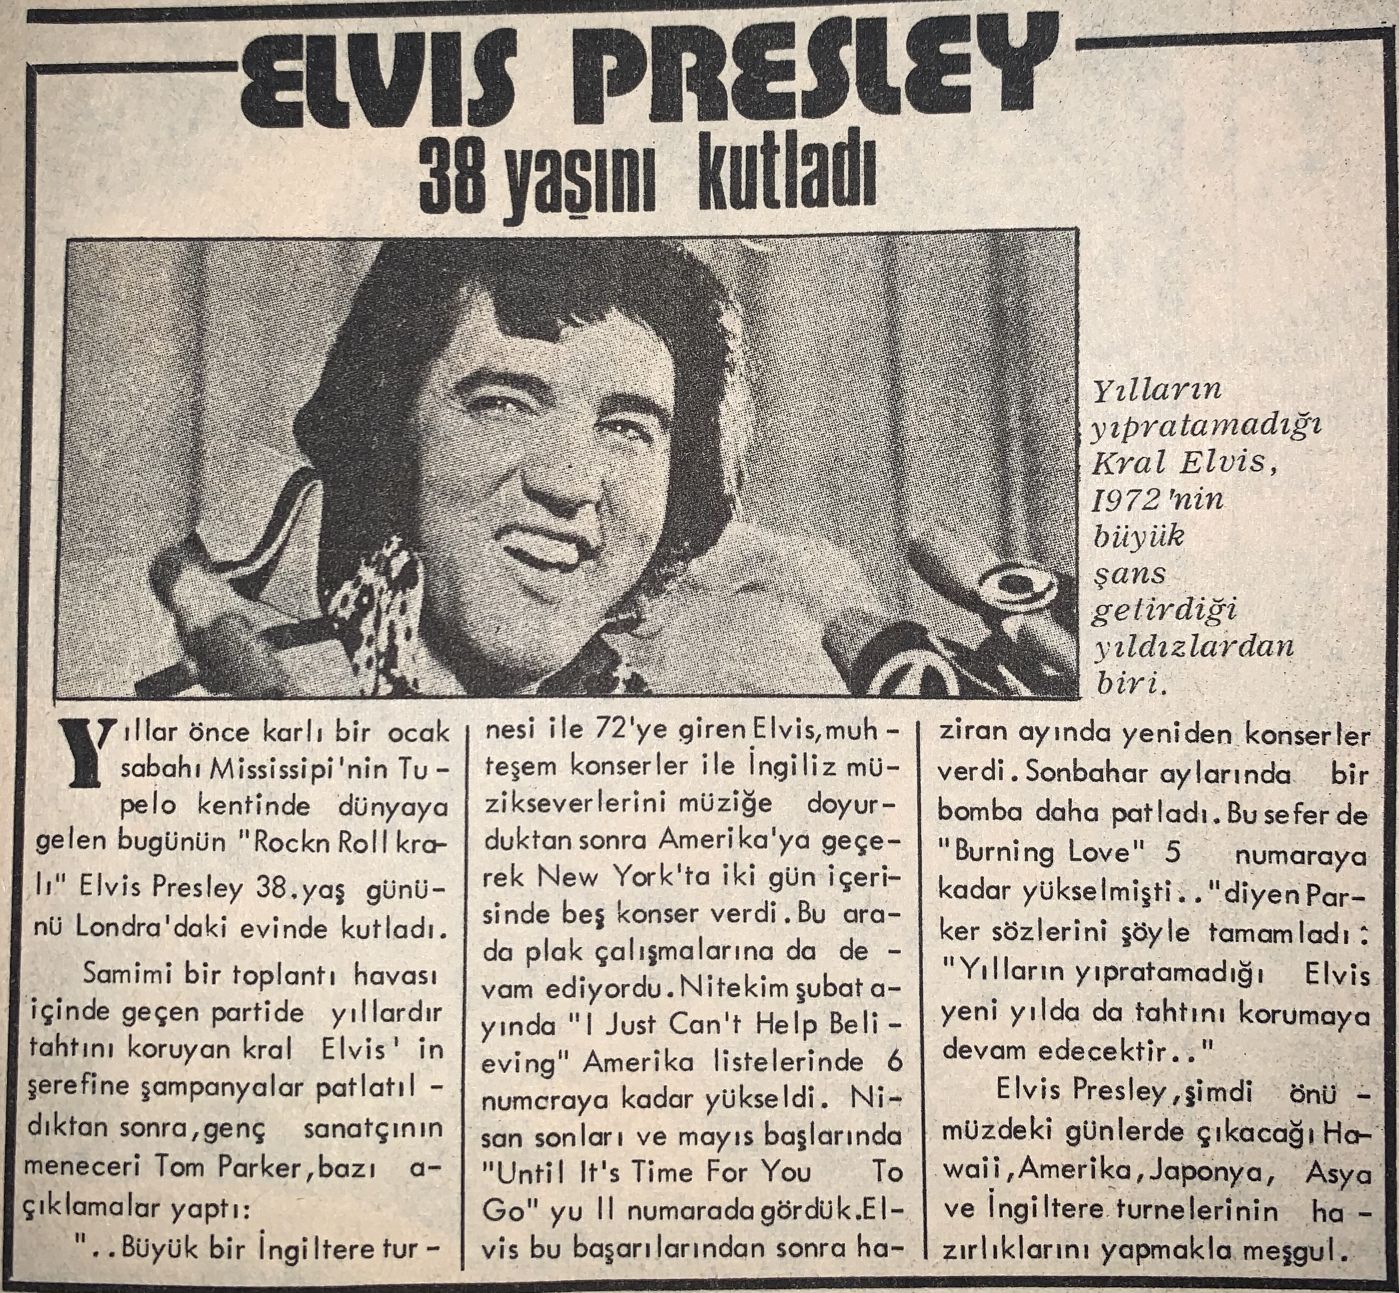 Elvis Presley, 38 Yaşını Kutladı